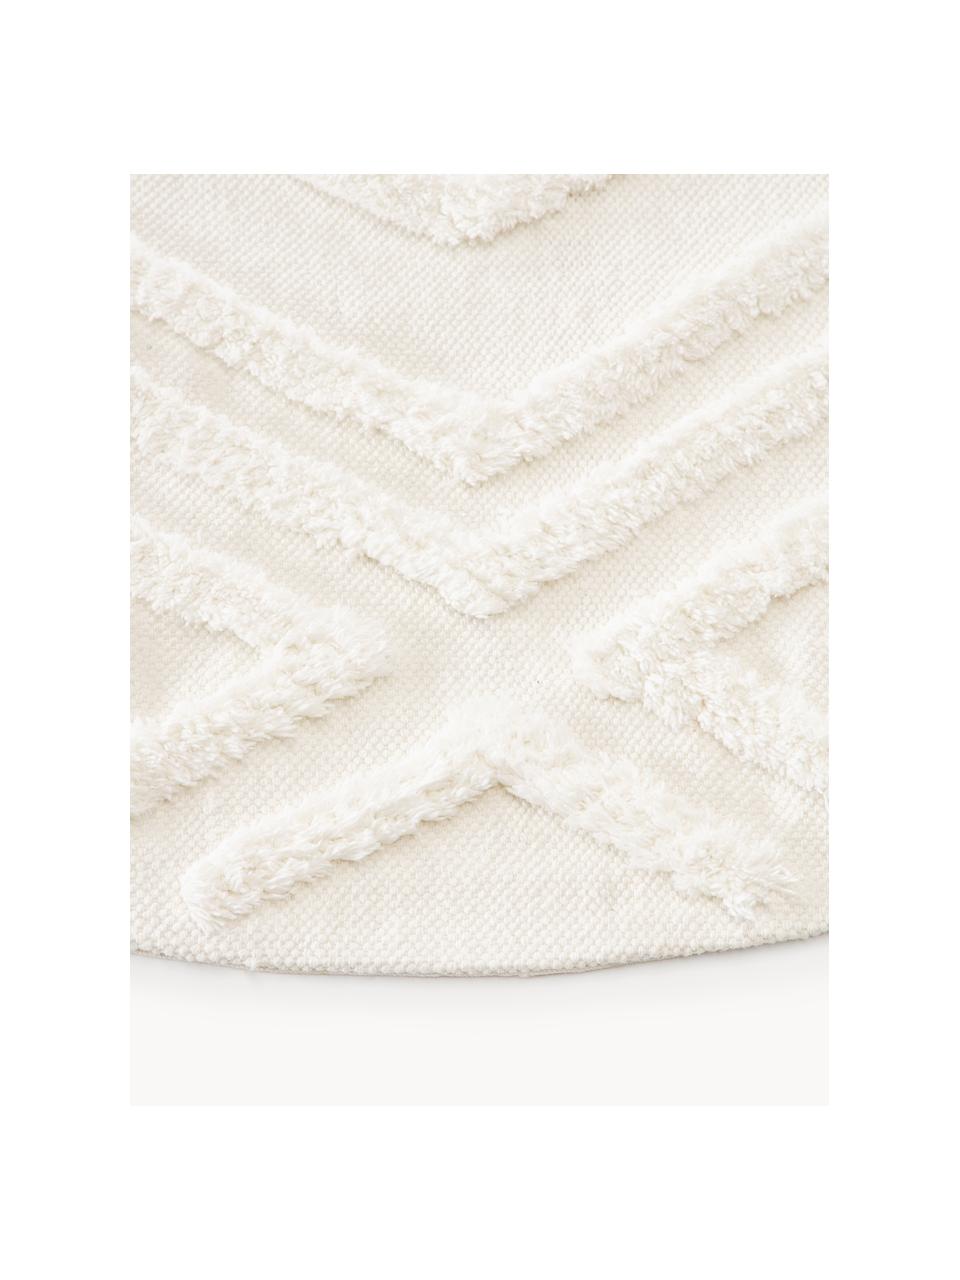 Alfombra redonda de algodón texturizada Ziggy, 100% algodón, Blanco crema, Ø 120 cm (Tamaño S)